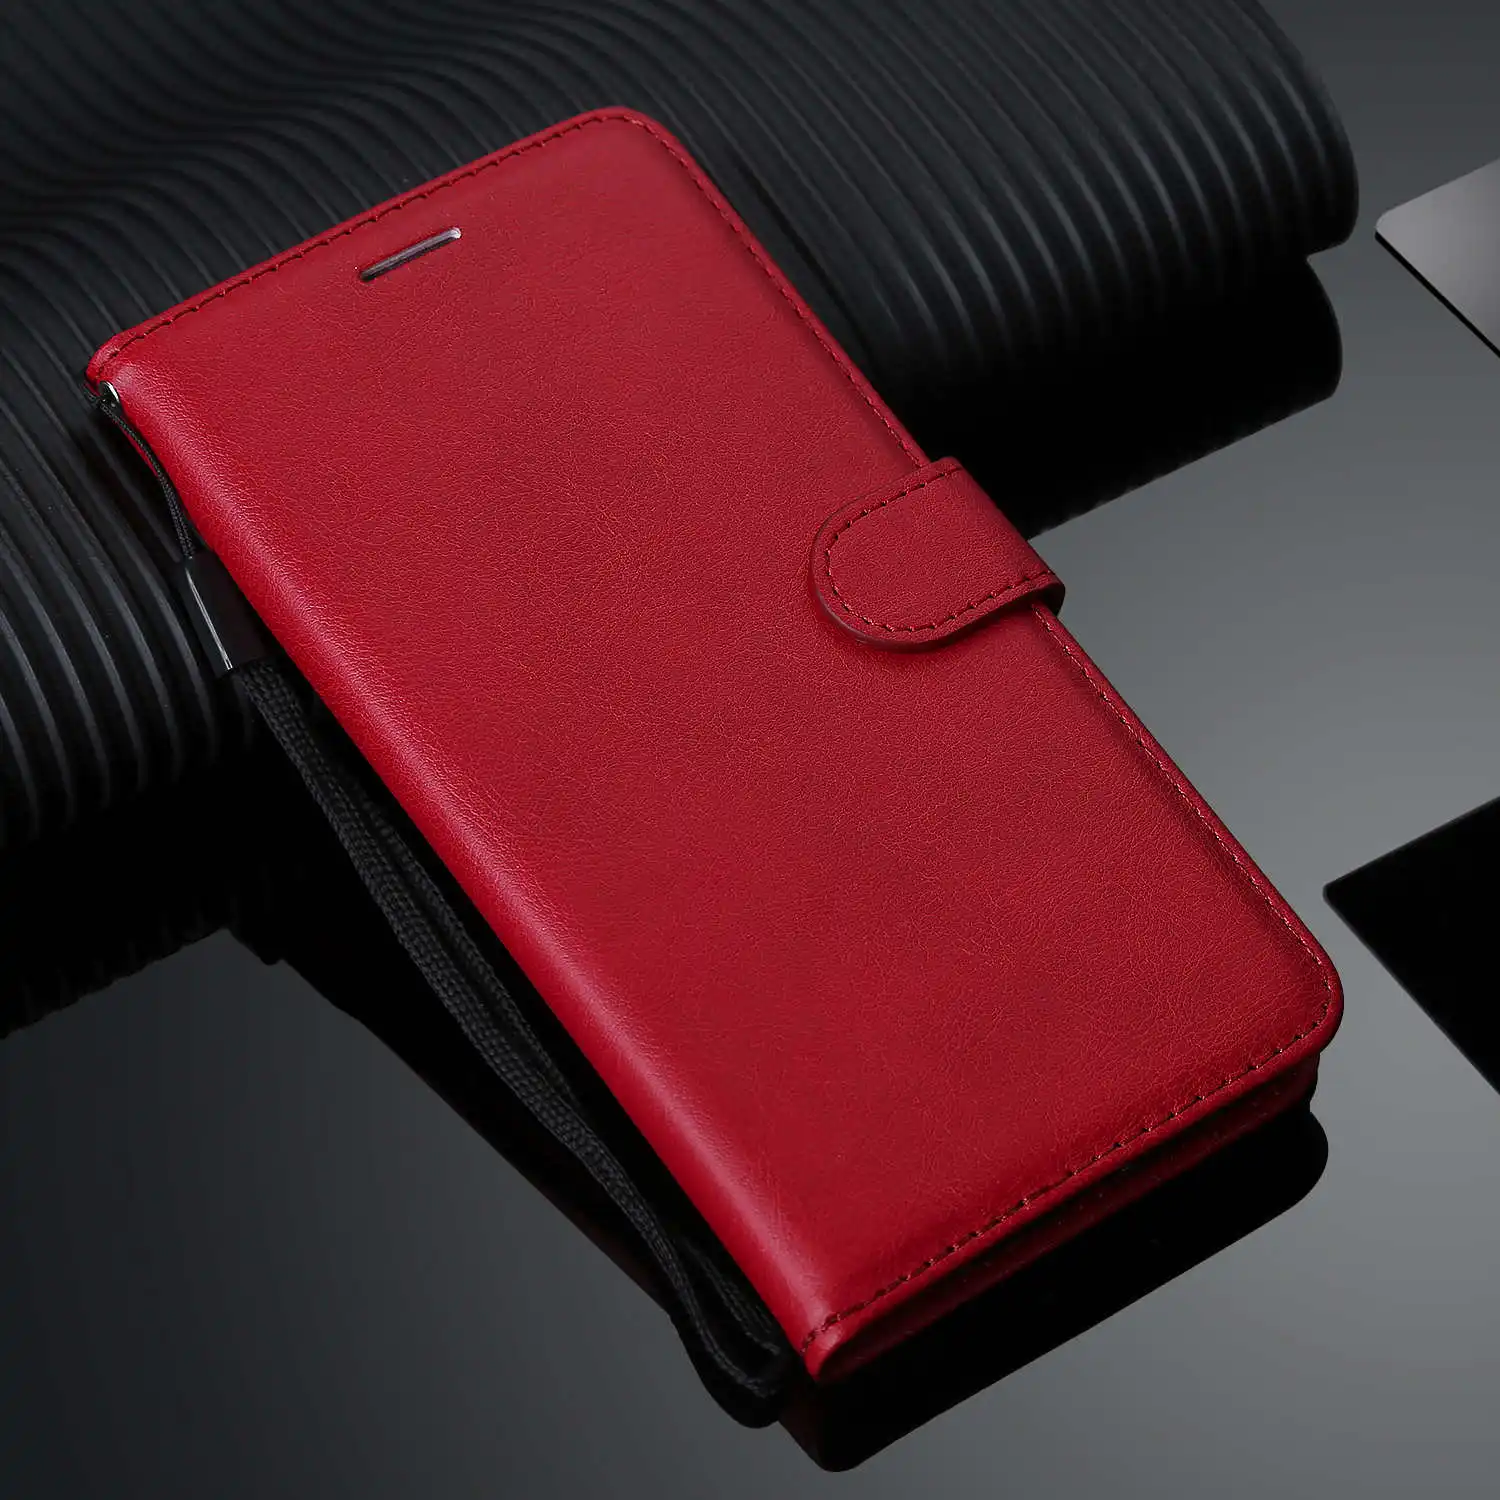 RISIEA Стильный чехол-портмоне из кожи для Xiaomi Redmi GO Note 4 4X 5A 3, 5, 6, 7, pro 5Plus S2 Y1 Y1lite Y2 4A K20 pro Чехол с откидной крышкой - Цвет: Red